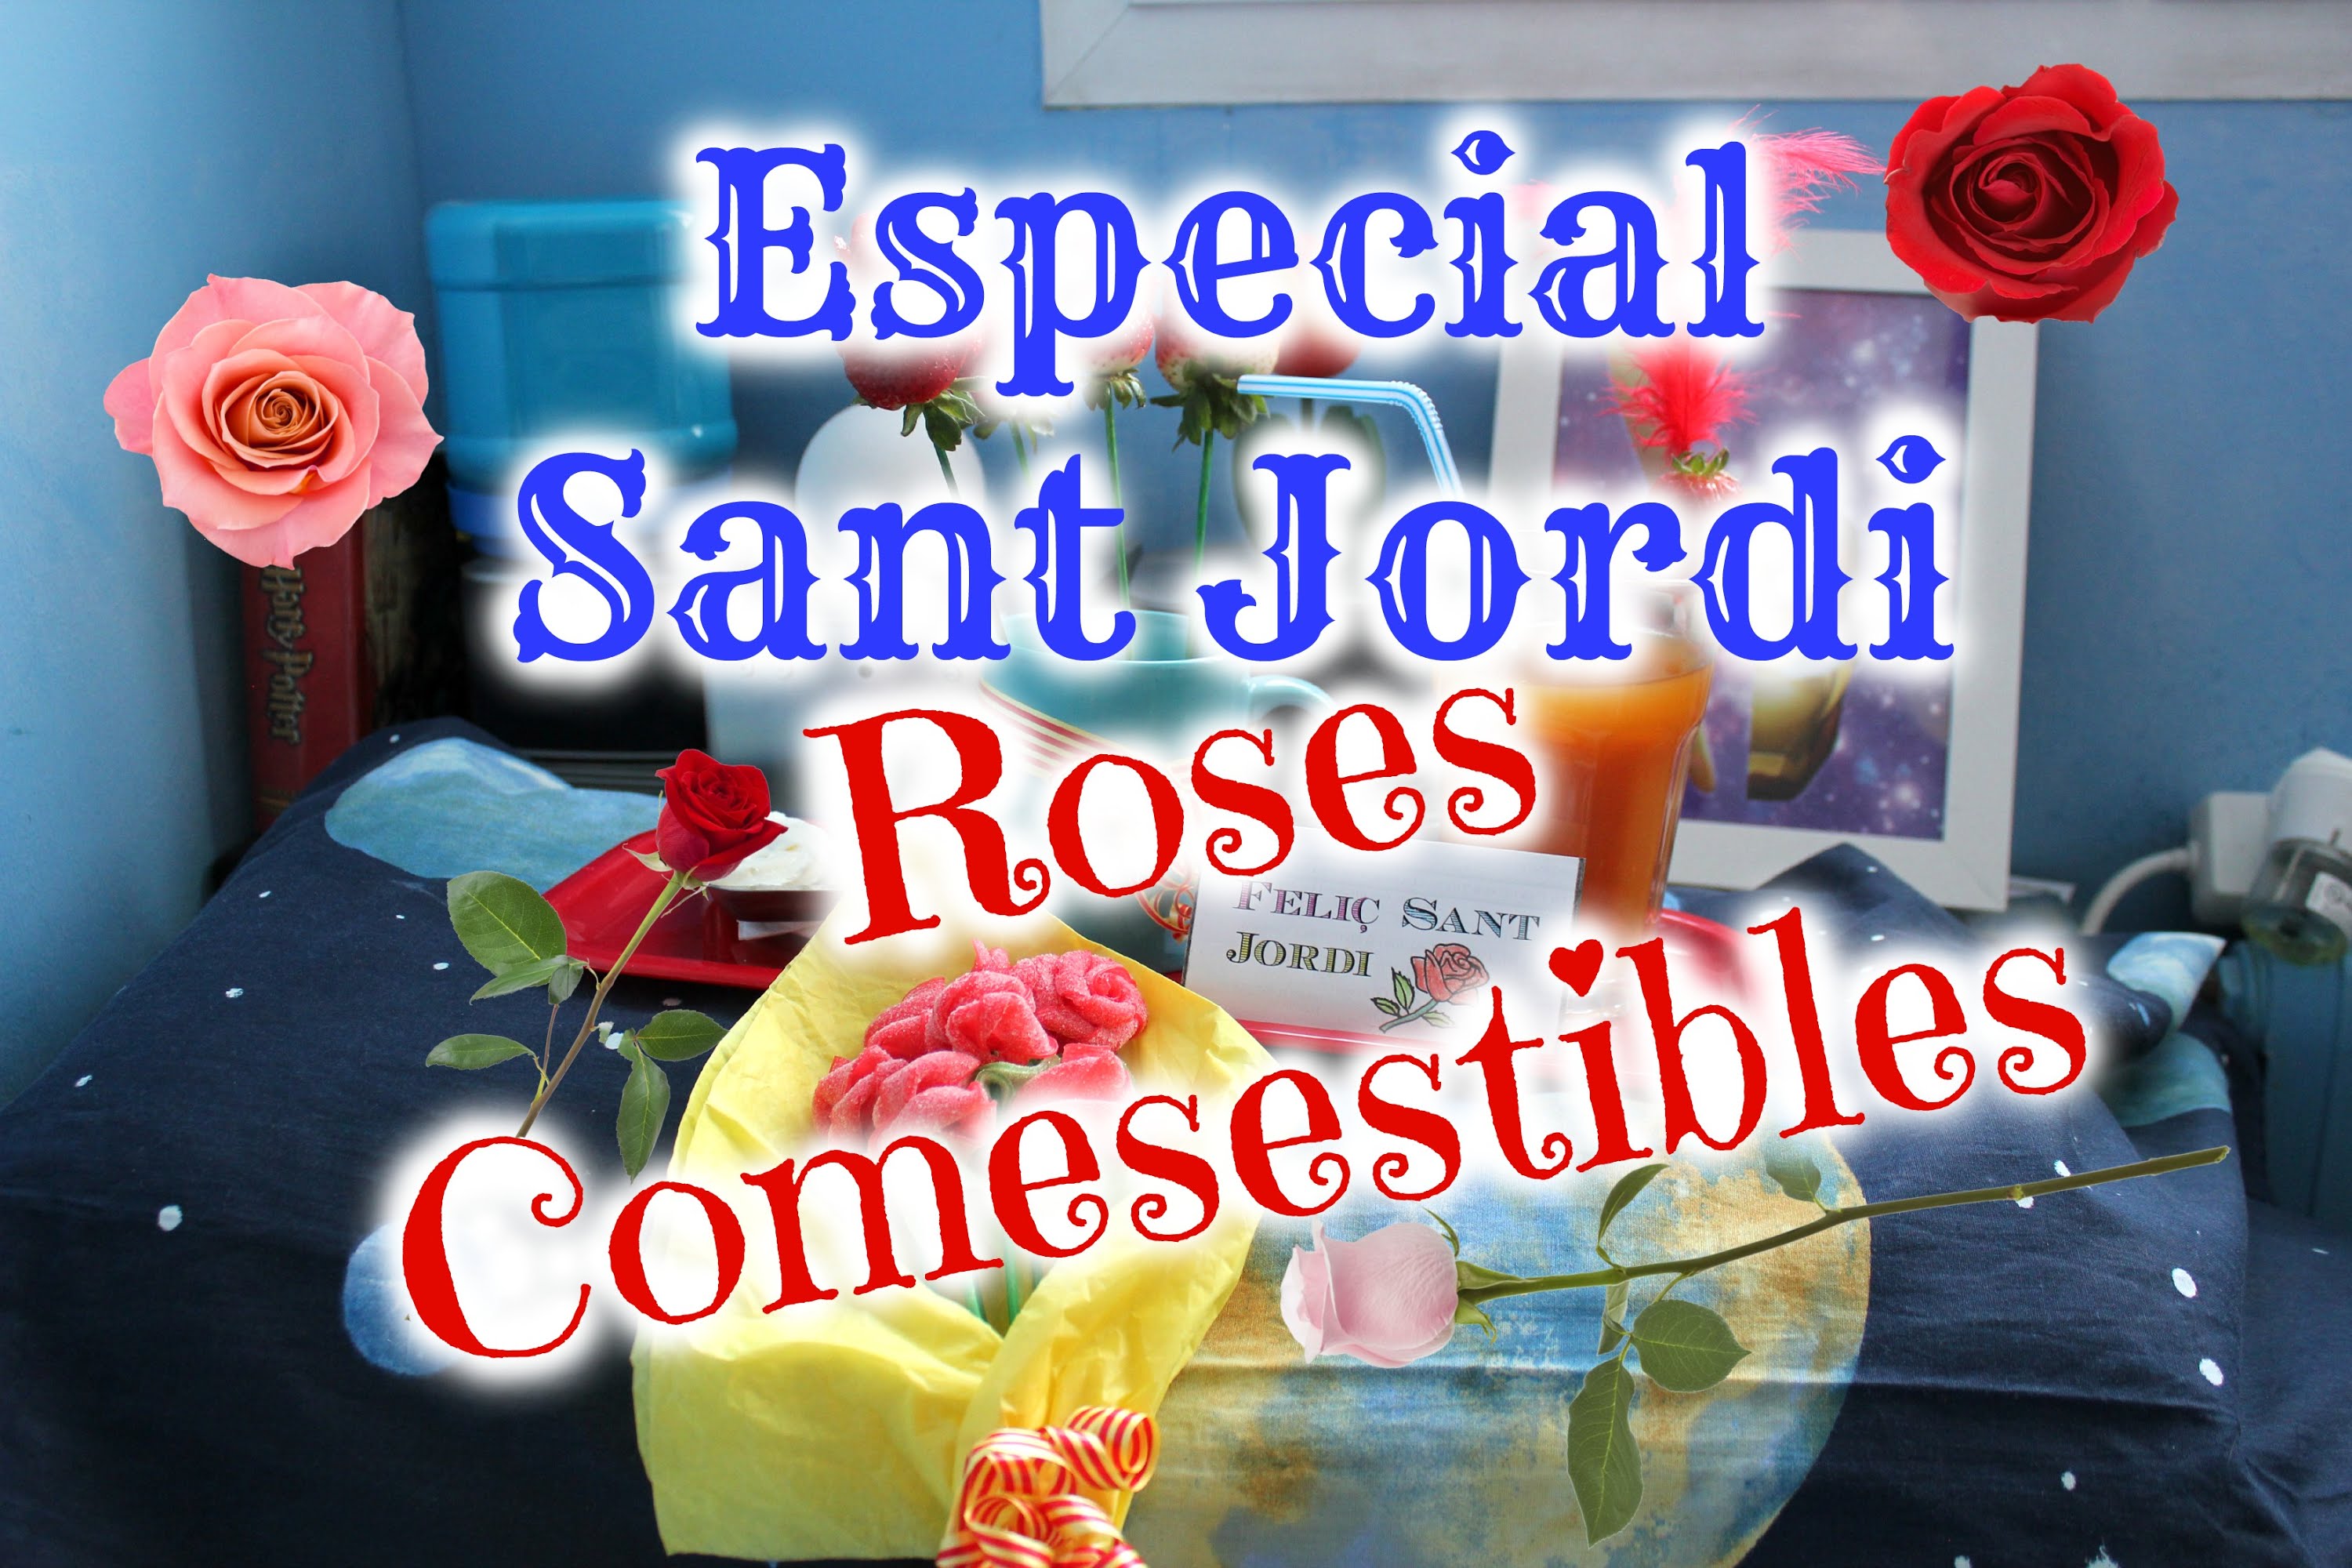 ESPECIAL SANT JORDI: ROSES COMESTIBLES ✿✿ 🌹🌹 de Arandur